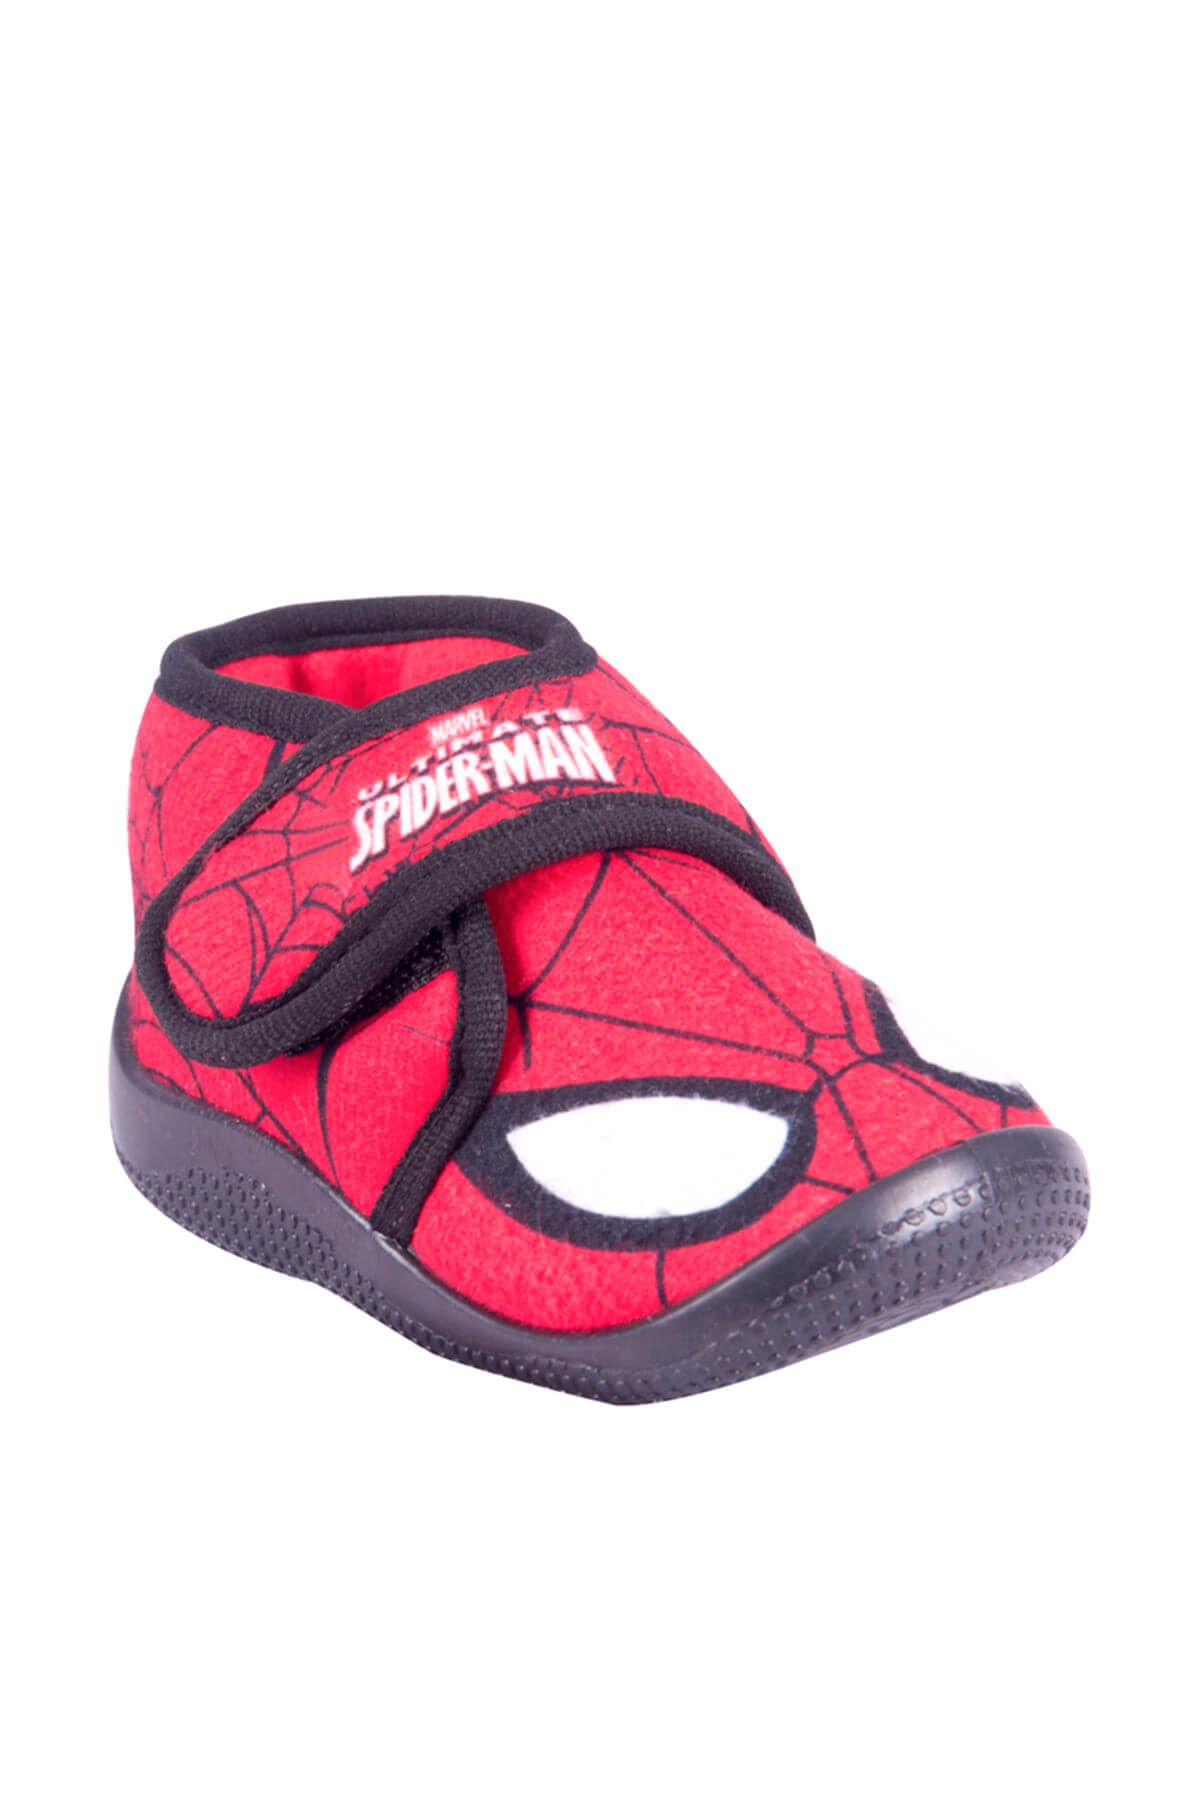 Spiderman 90208 PE Kırmızı Erkek Çocuk Panduf 100301150